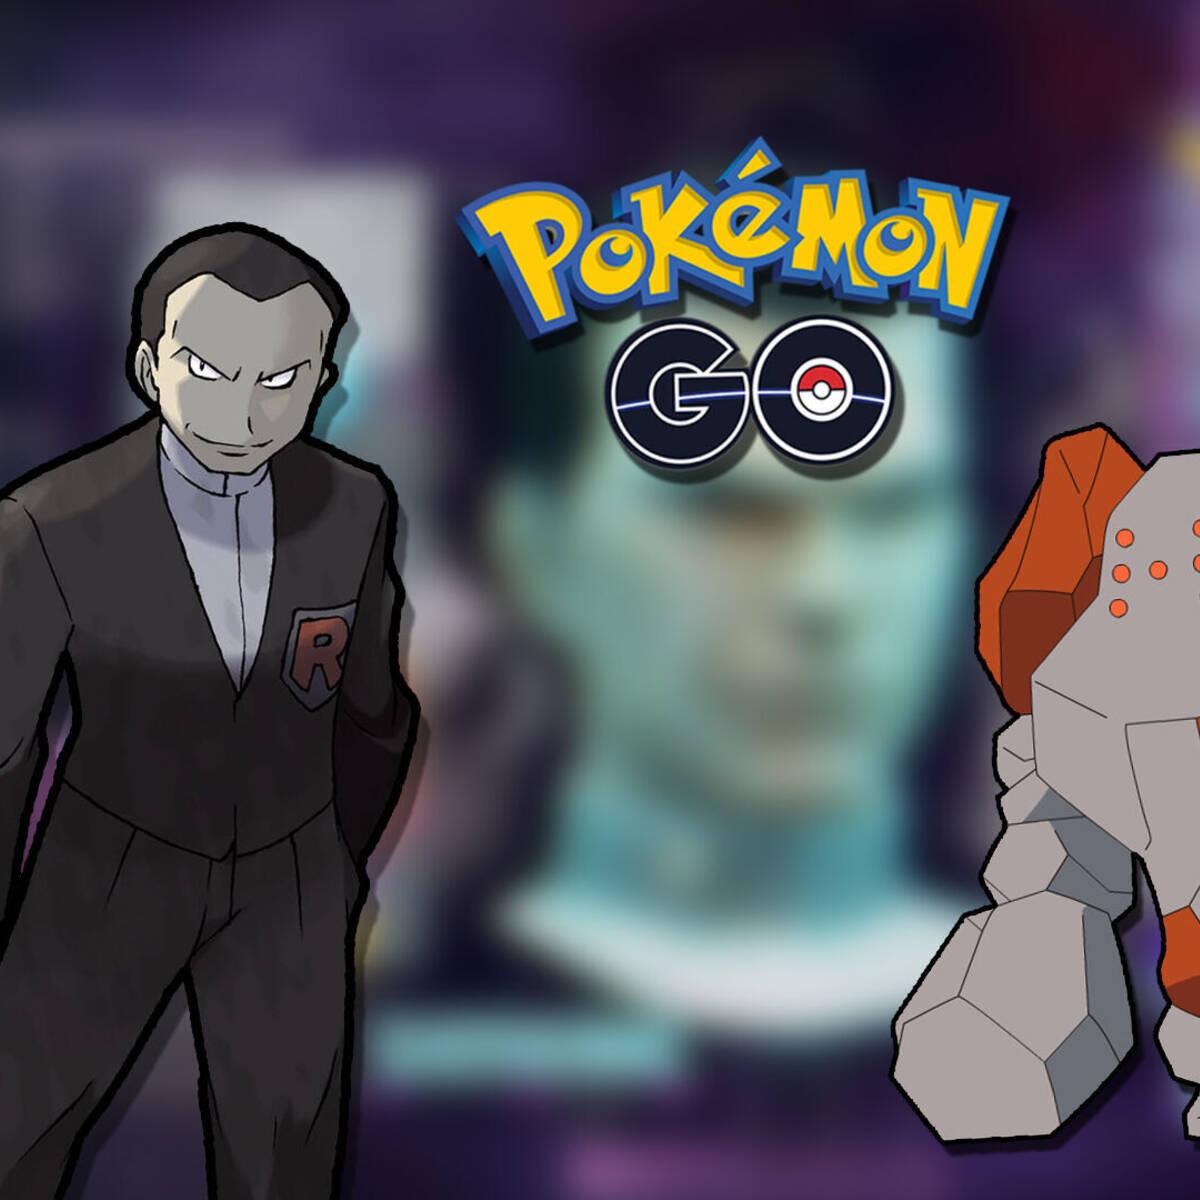 Como vencer Giovanni em Pokémon GO (dezembro de 2023)